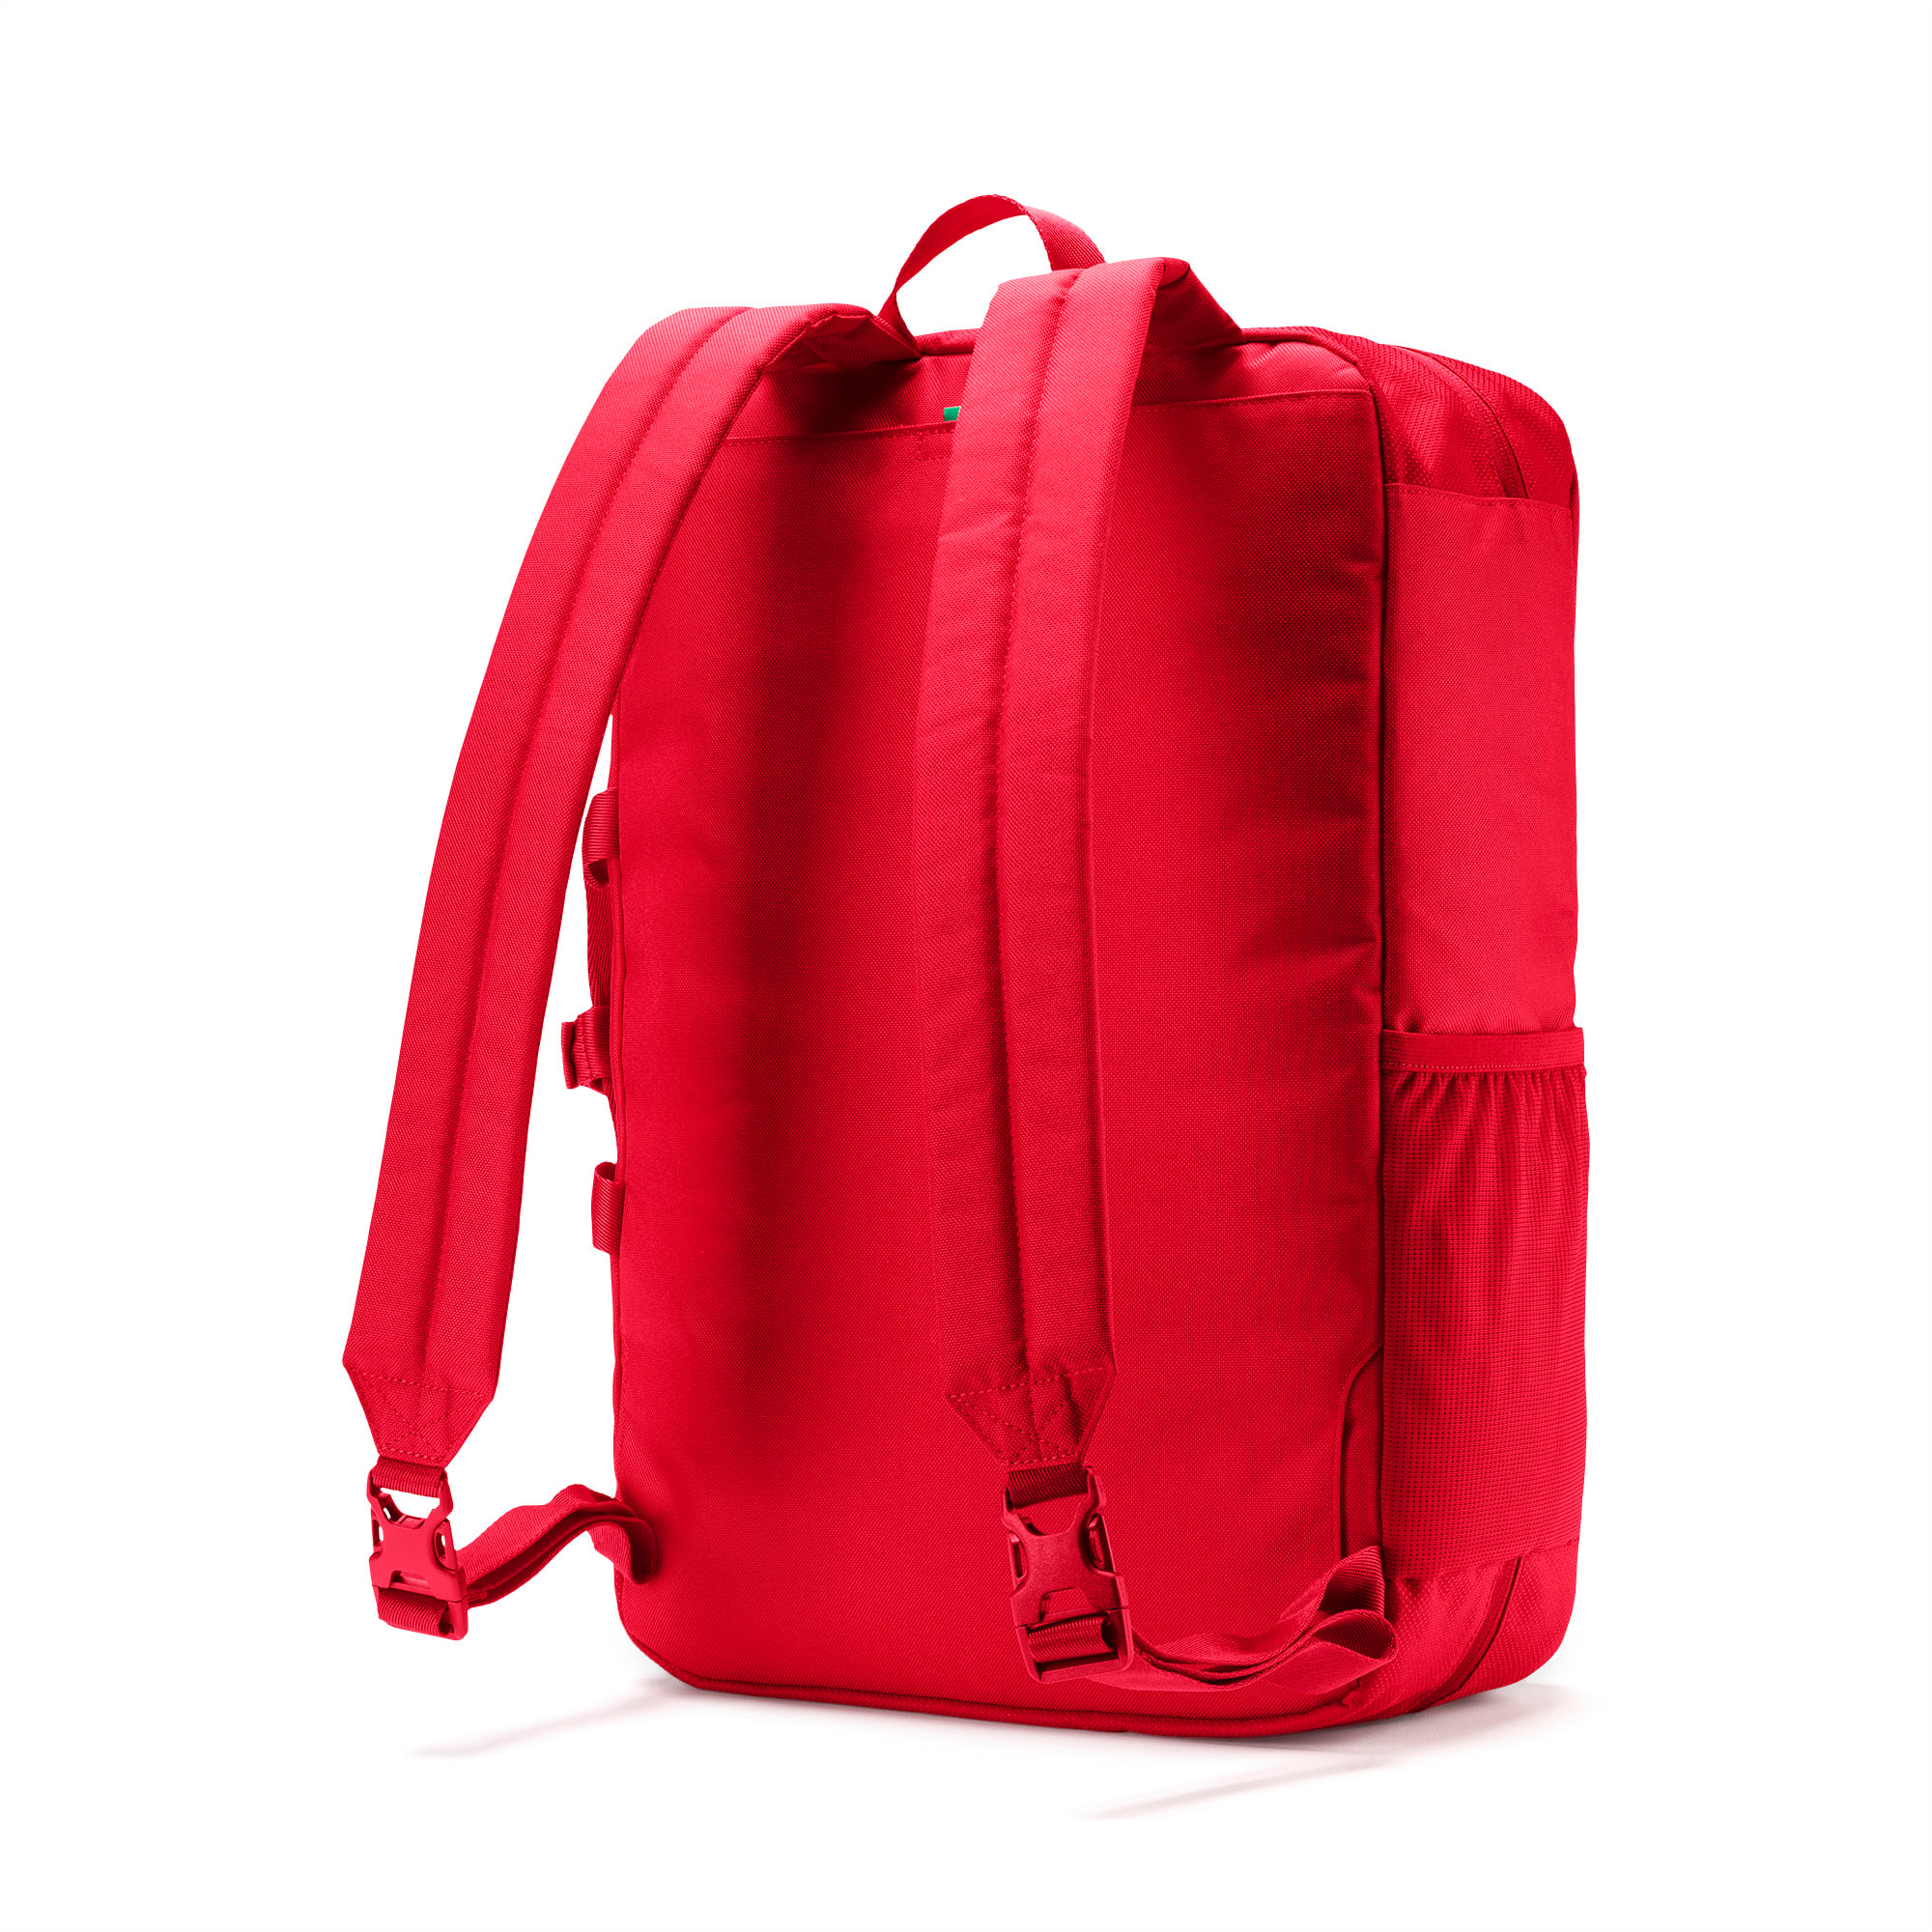 puma ferrari replica backpack bags